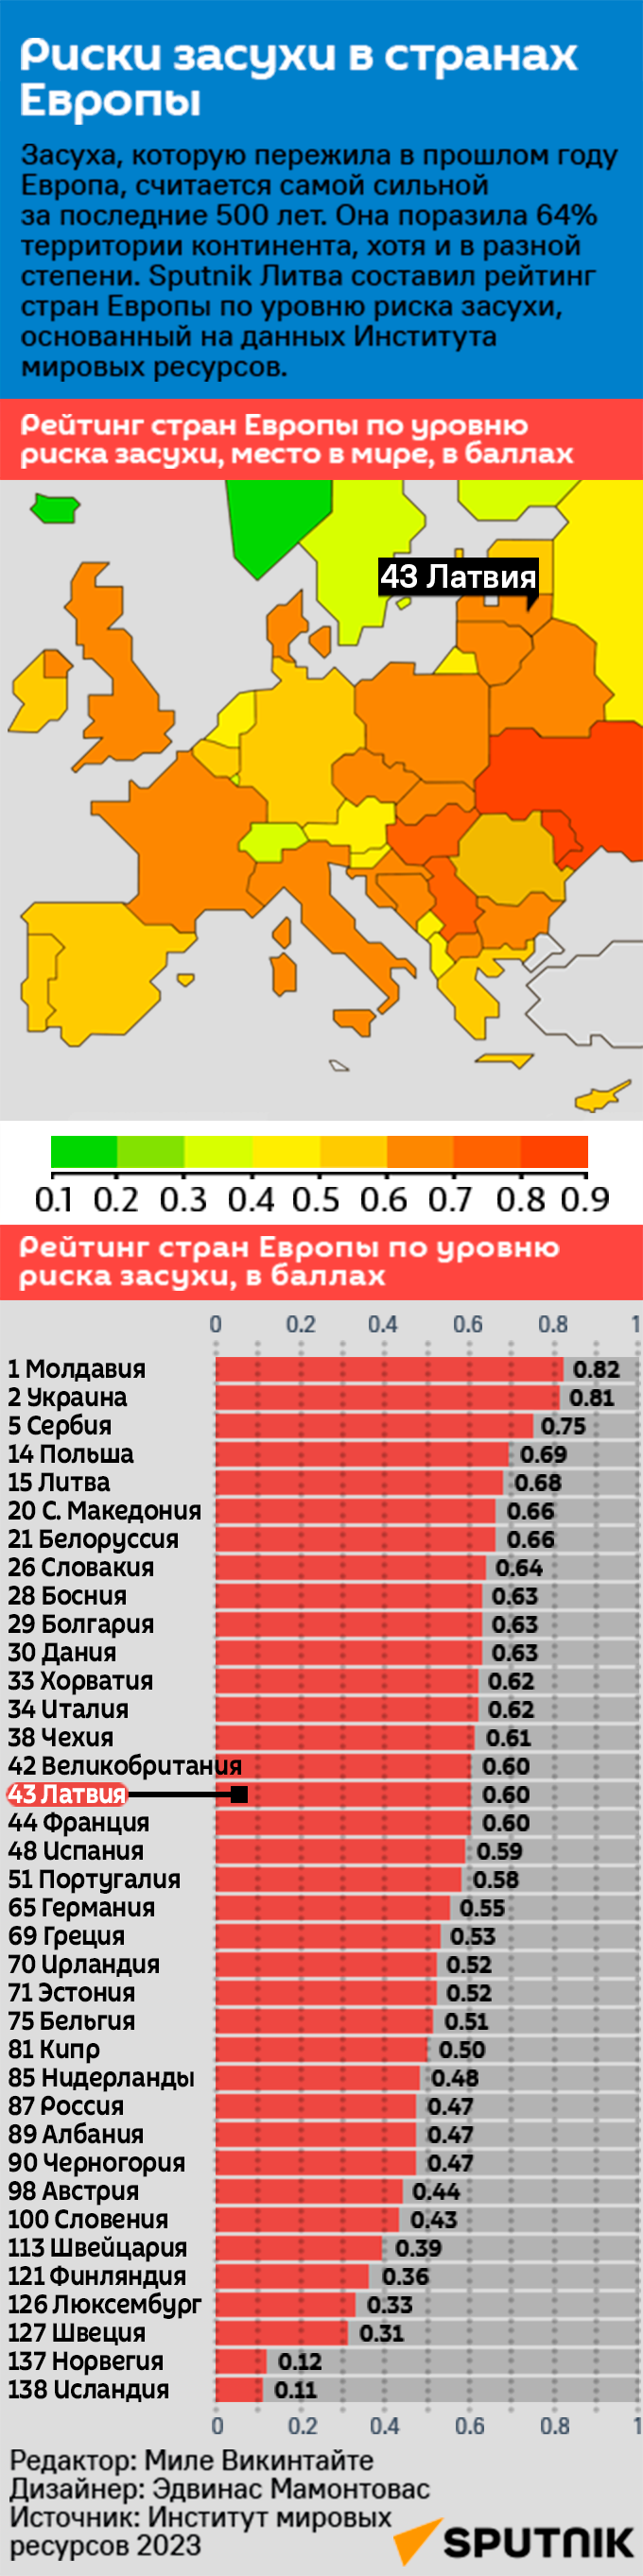 Риски засухи в странах Европы - Sputnik Латвия